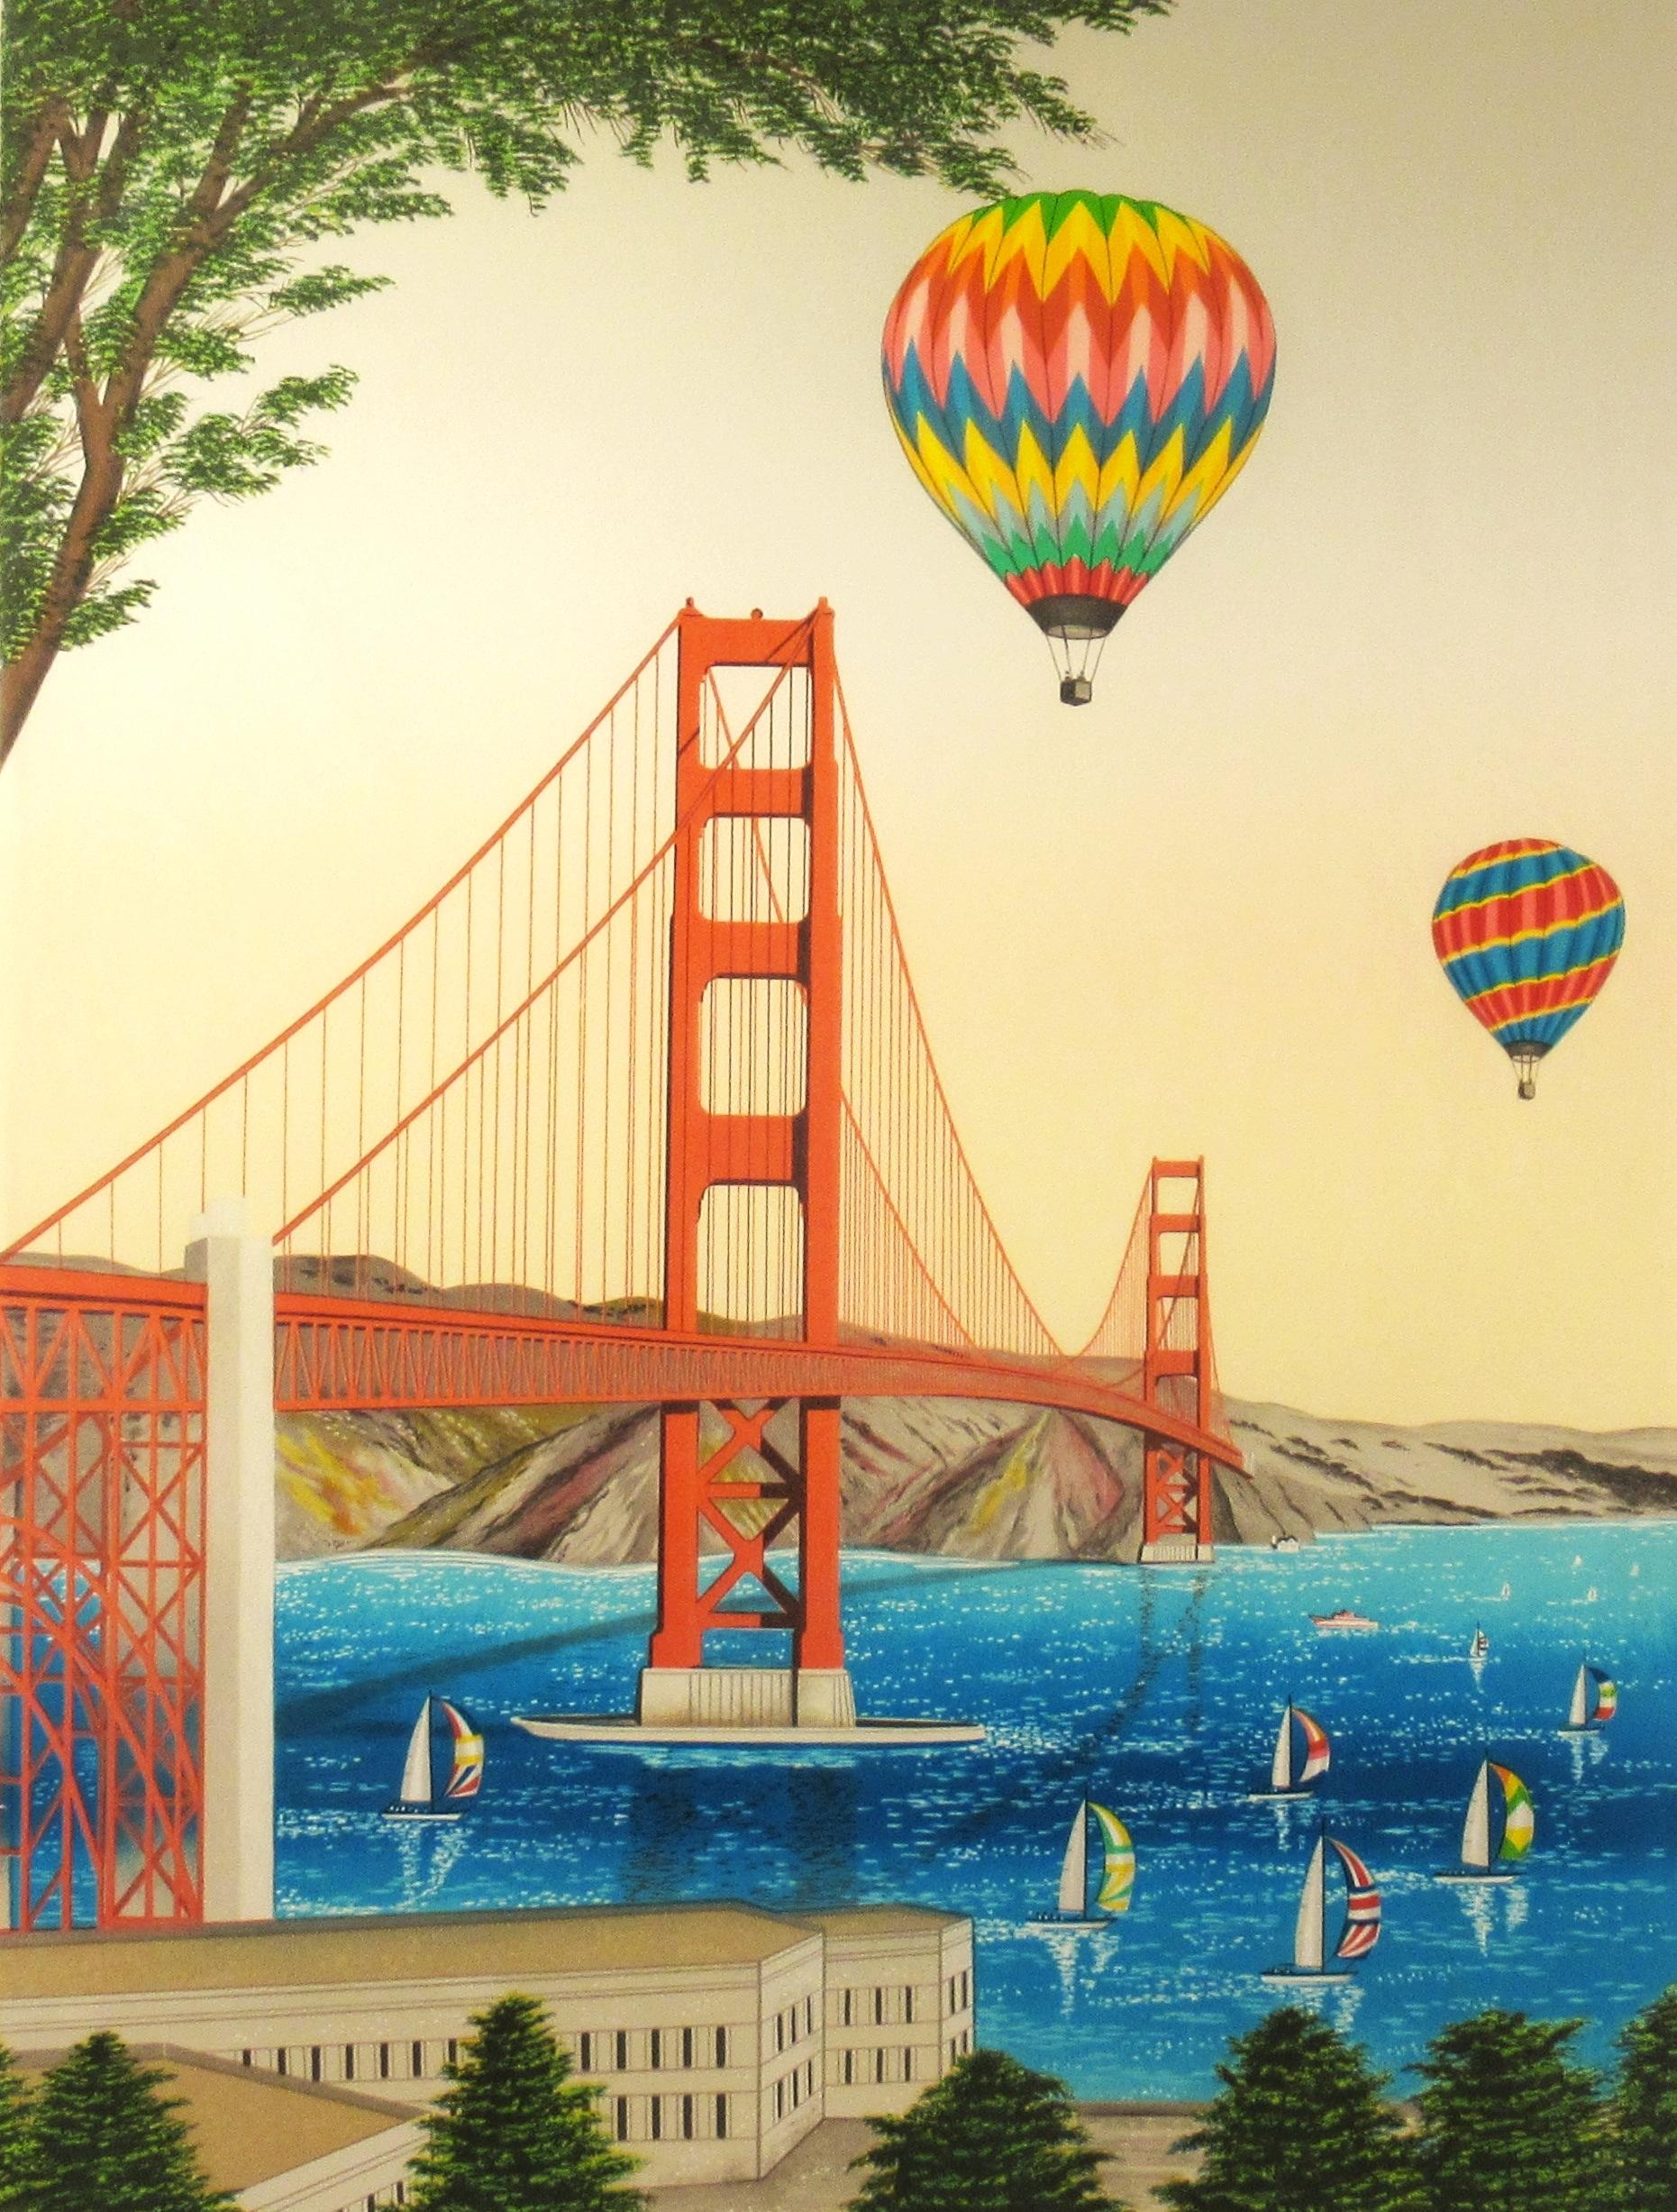 Golden Gate Bridge, San Francisco - Print by Fanch (Francois Ledan)